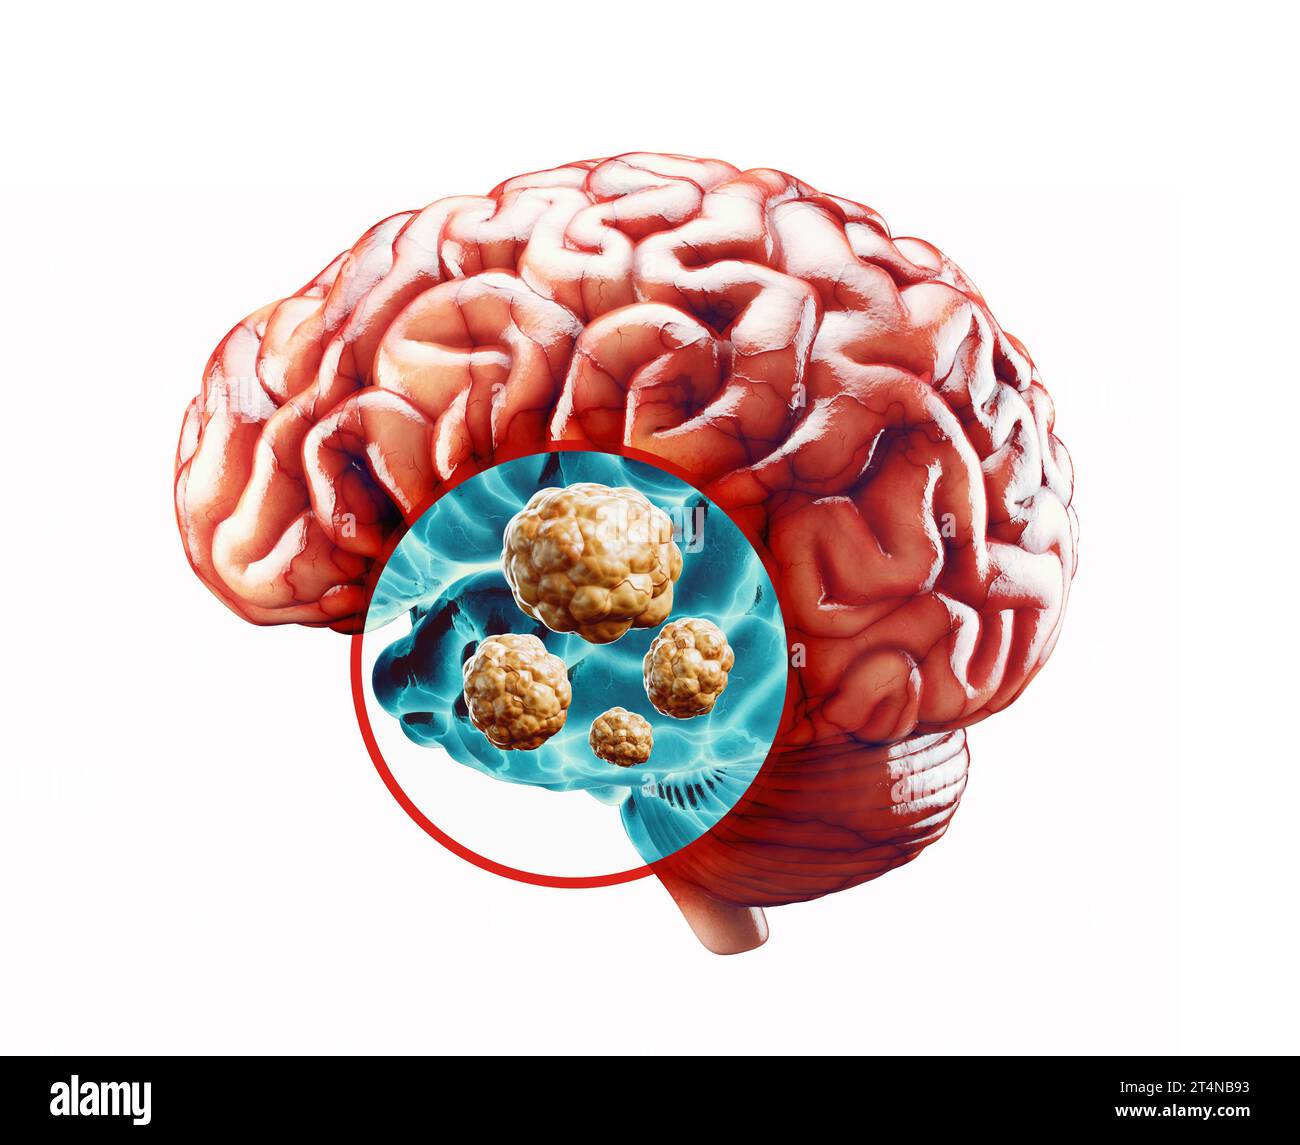 Anatomie de l'illustration réaliste 3d de l'organe interne humain - cerveau. Radiographie du cerveau humain à la recherche d'un cancer Banque D'Images